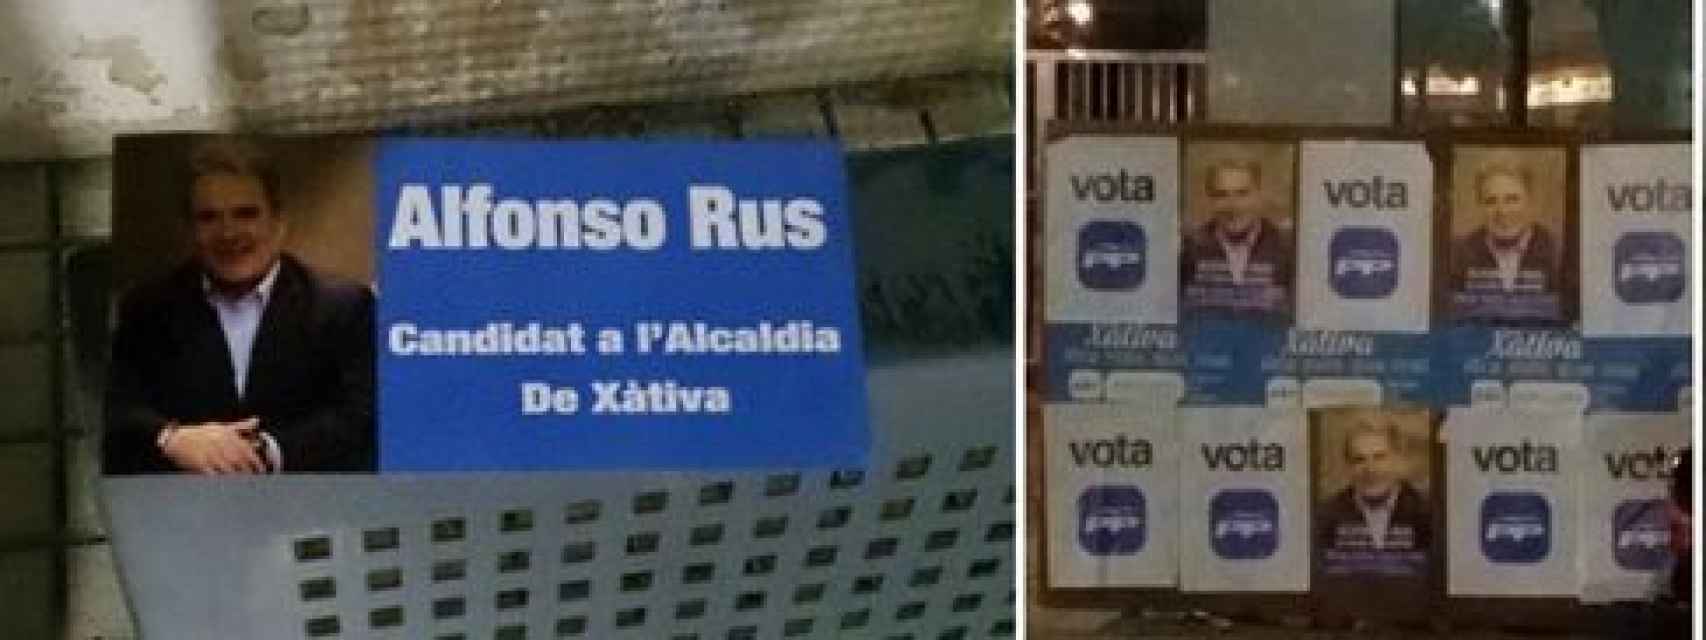 Los carteles electorales de Alfonso Rus, sin mención al PP.